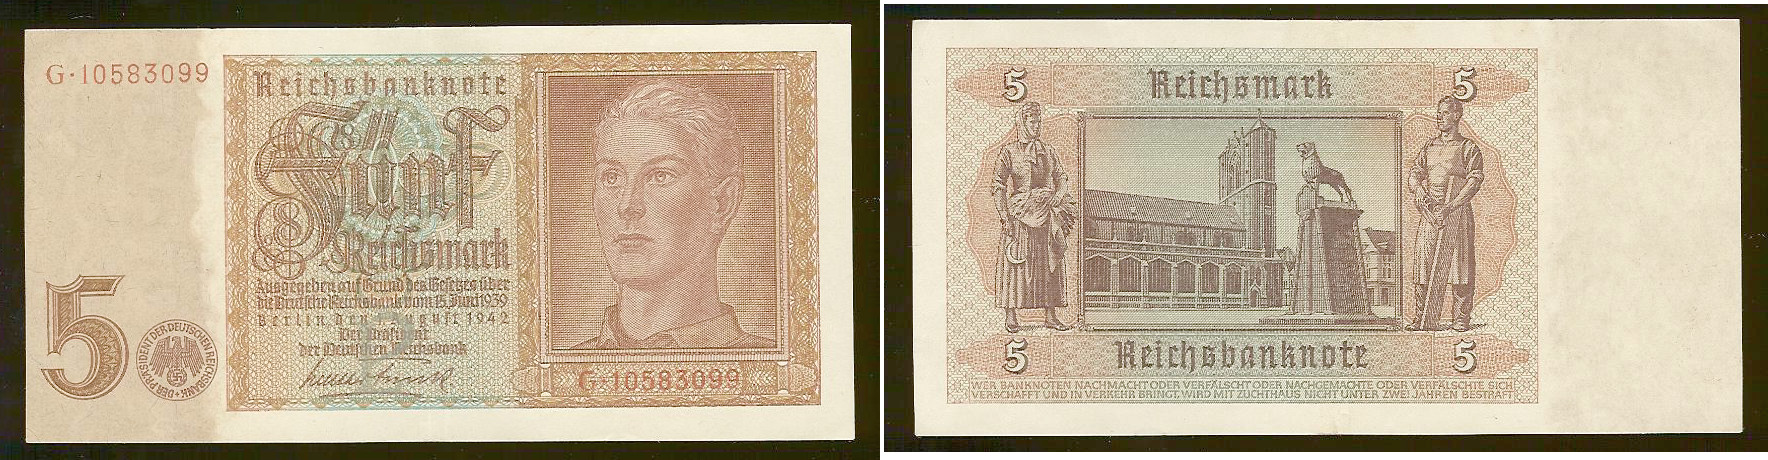 Germany 5 reichsmark 1942 AU+